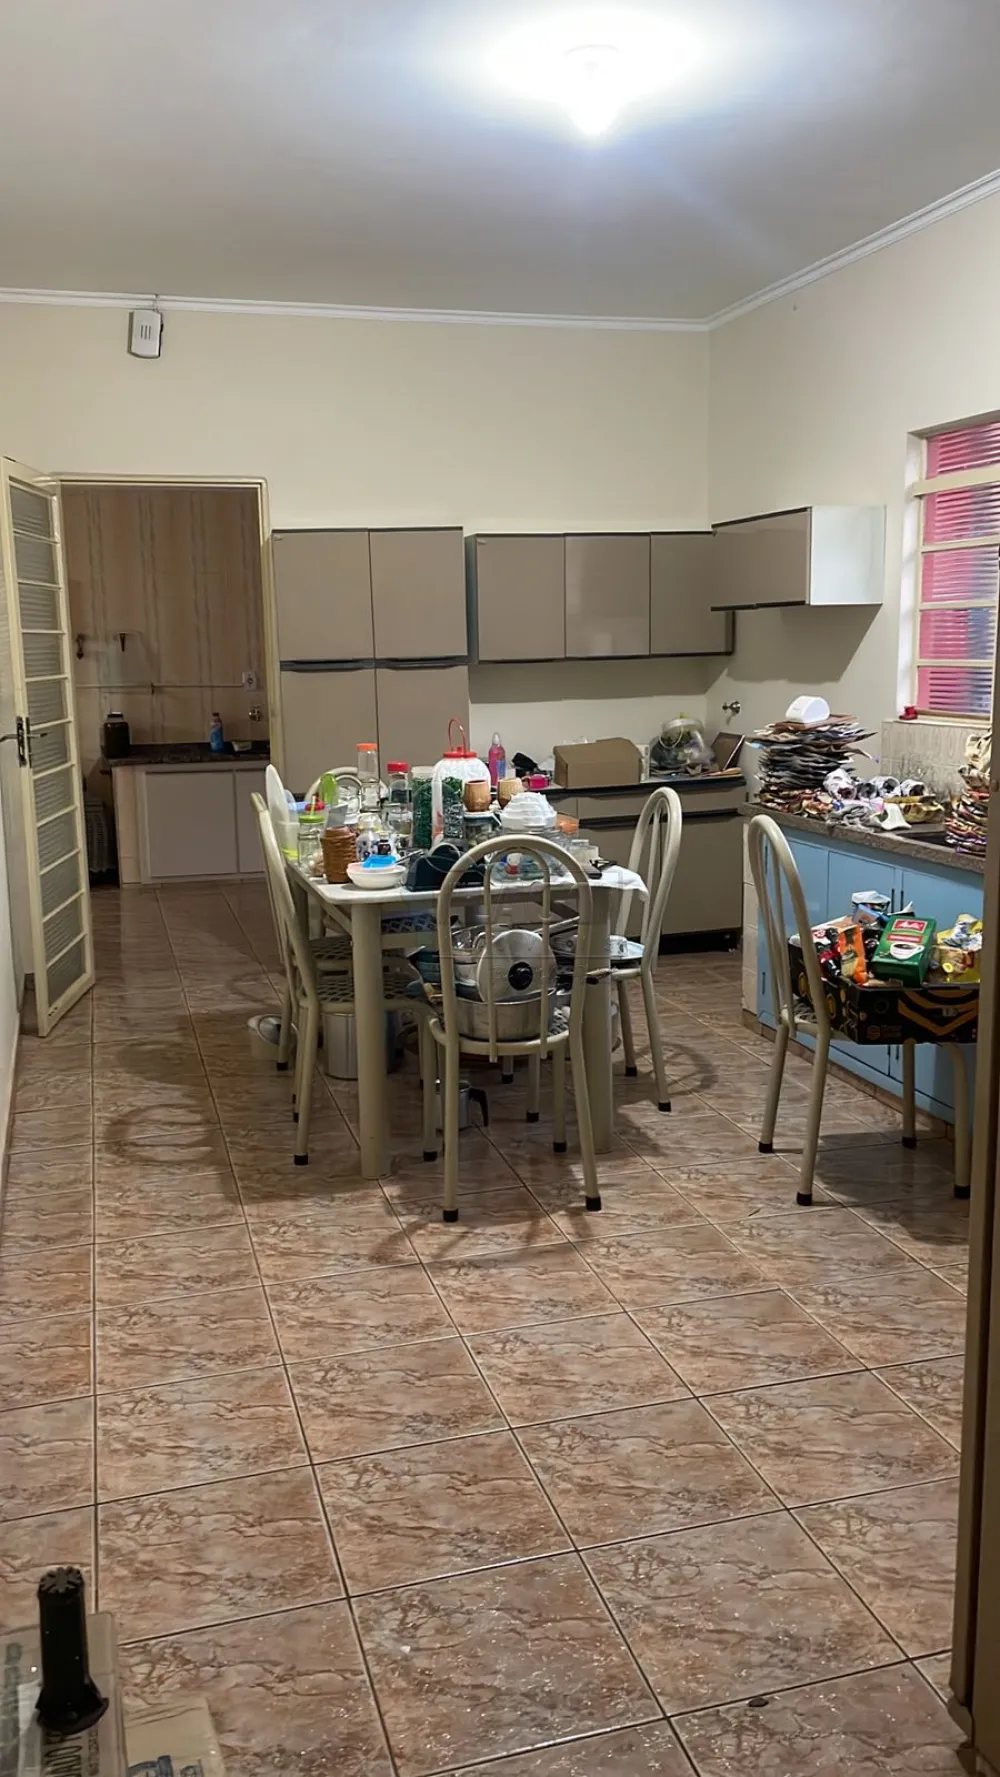 Comprar Casas / Padrão em Ribeirão Preto R$ 270.000,00 - Foto 12